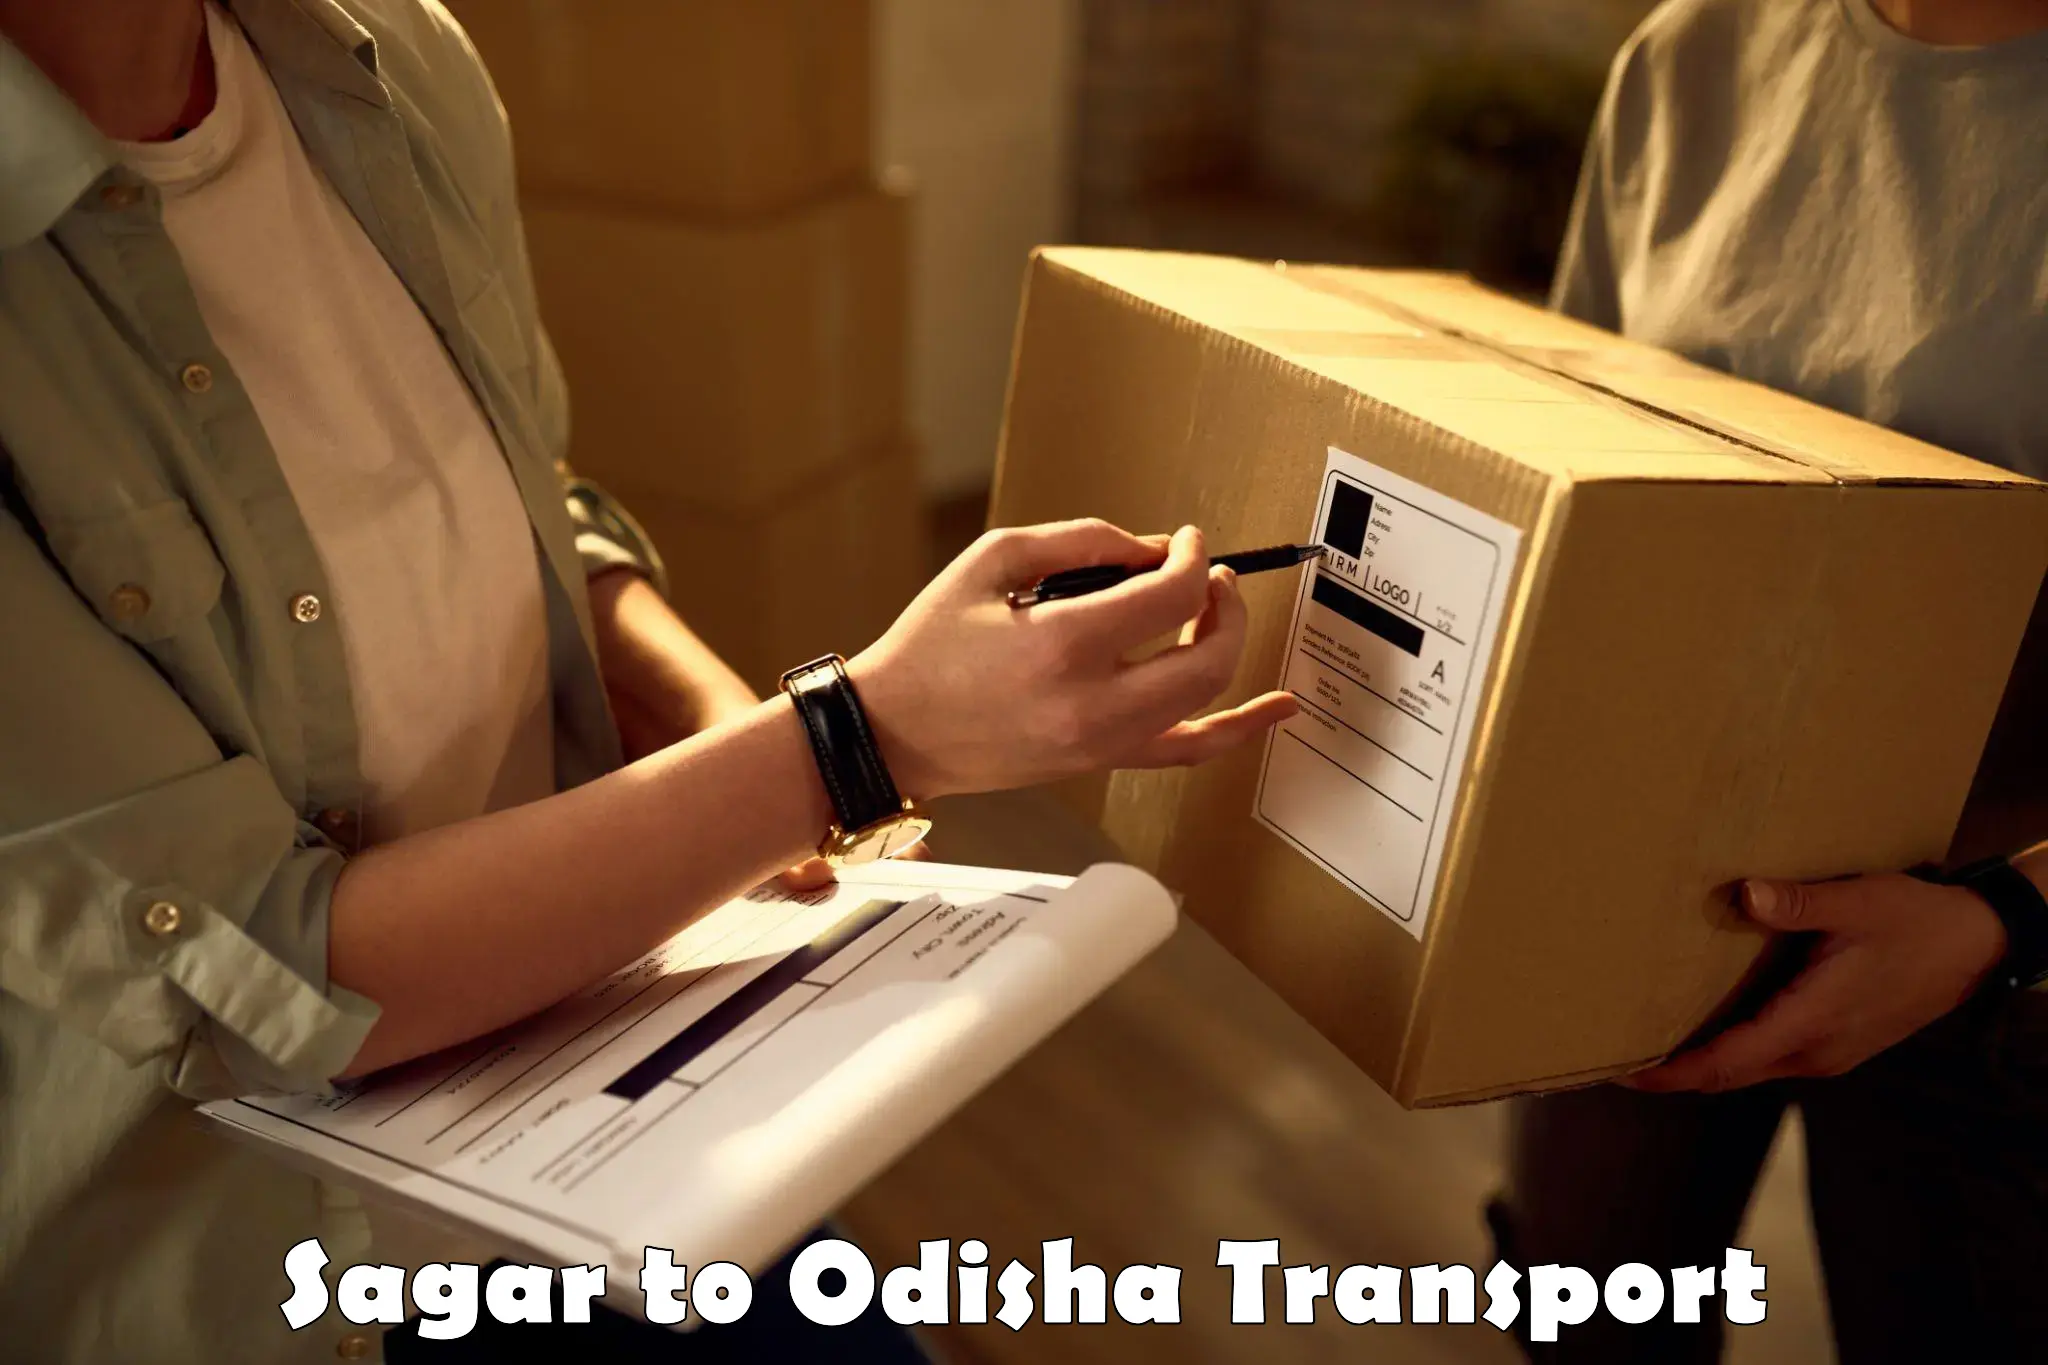 Road transport online services Sagar to Jagatsinghpur